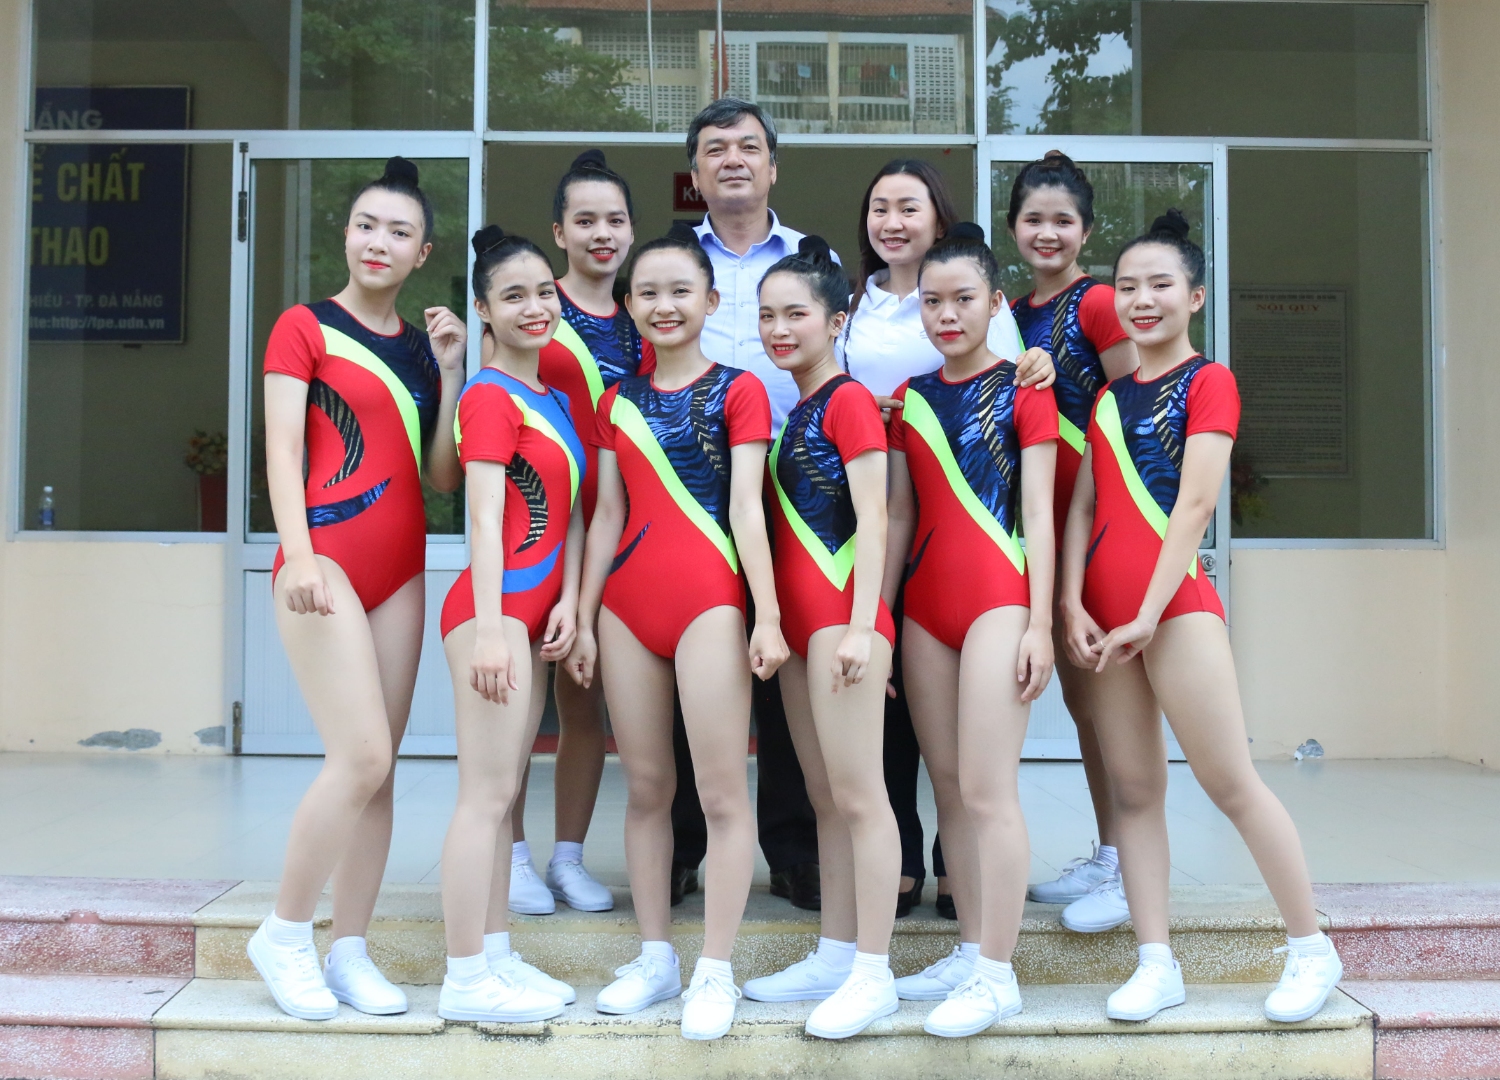 Khai mạc Đại hội Thể thao sinh viên Đại học Đà Nẵng lần thứ XI – 2019: Đại học Sư phạm giành Huy chương Bạc đầu tiên